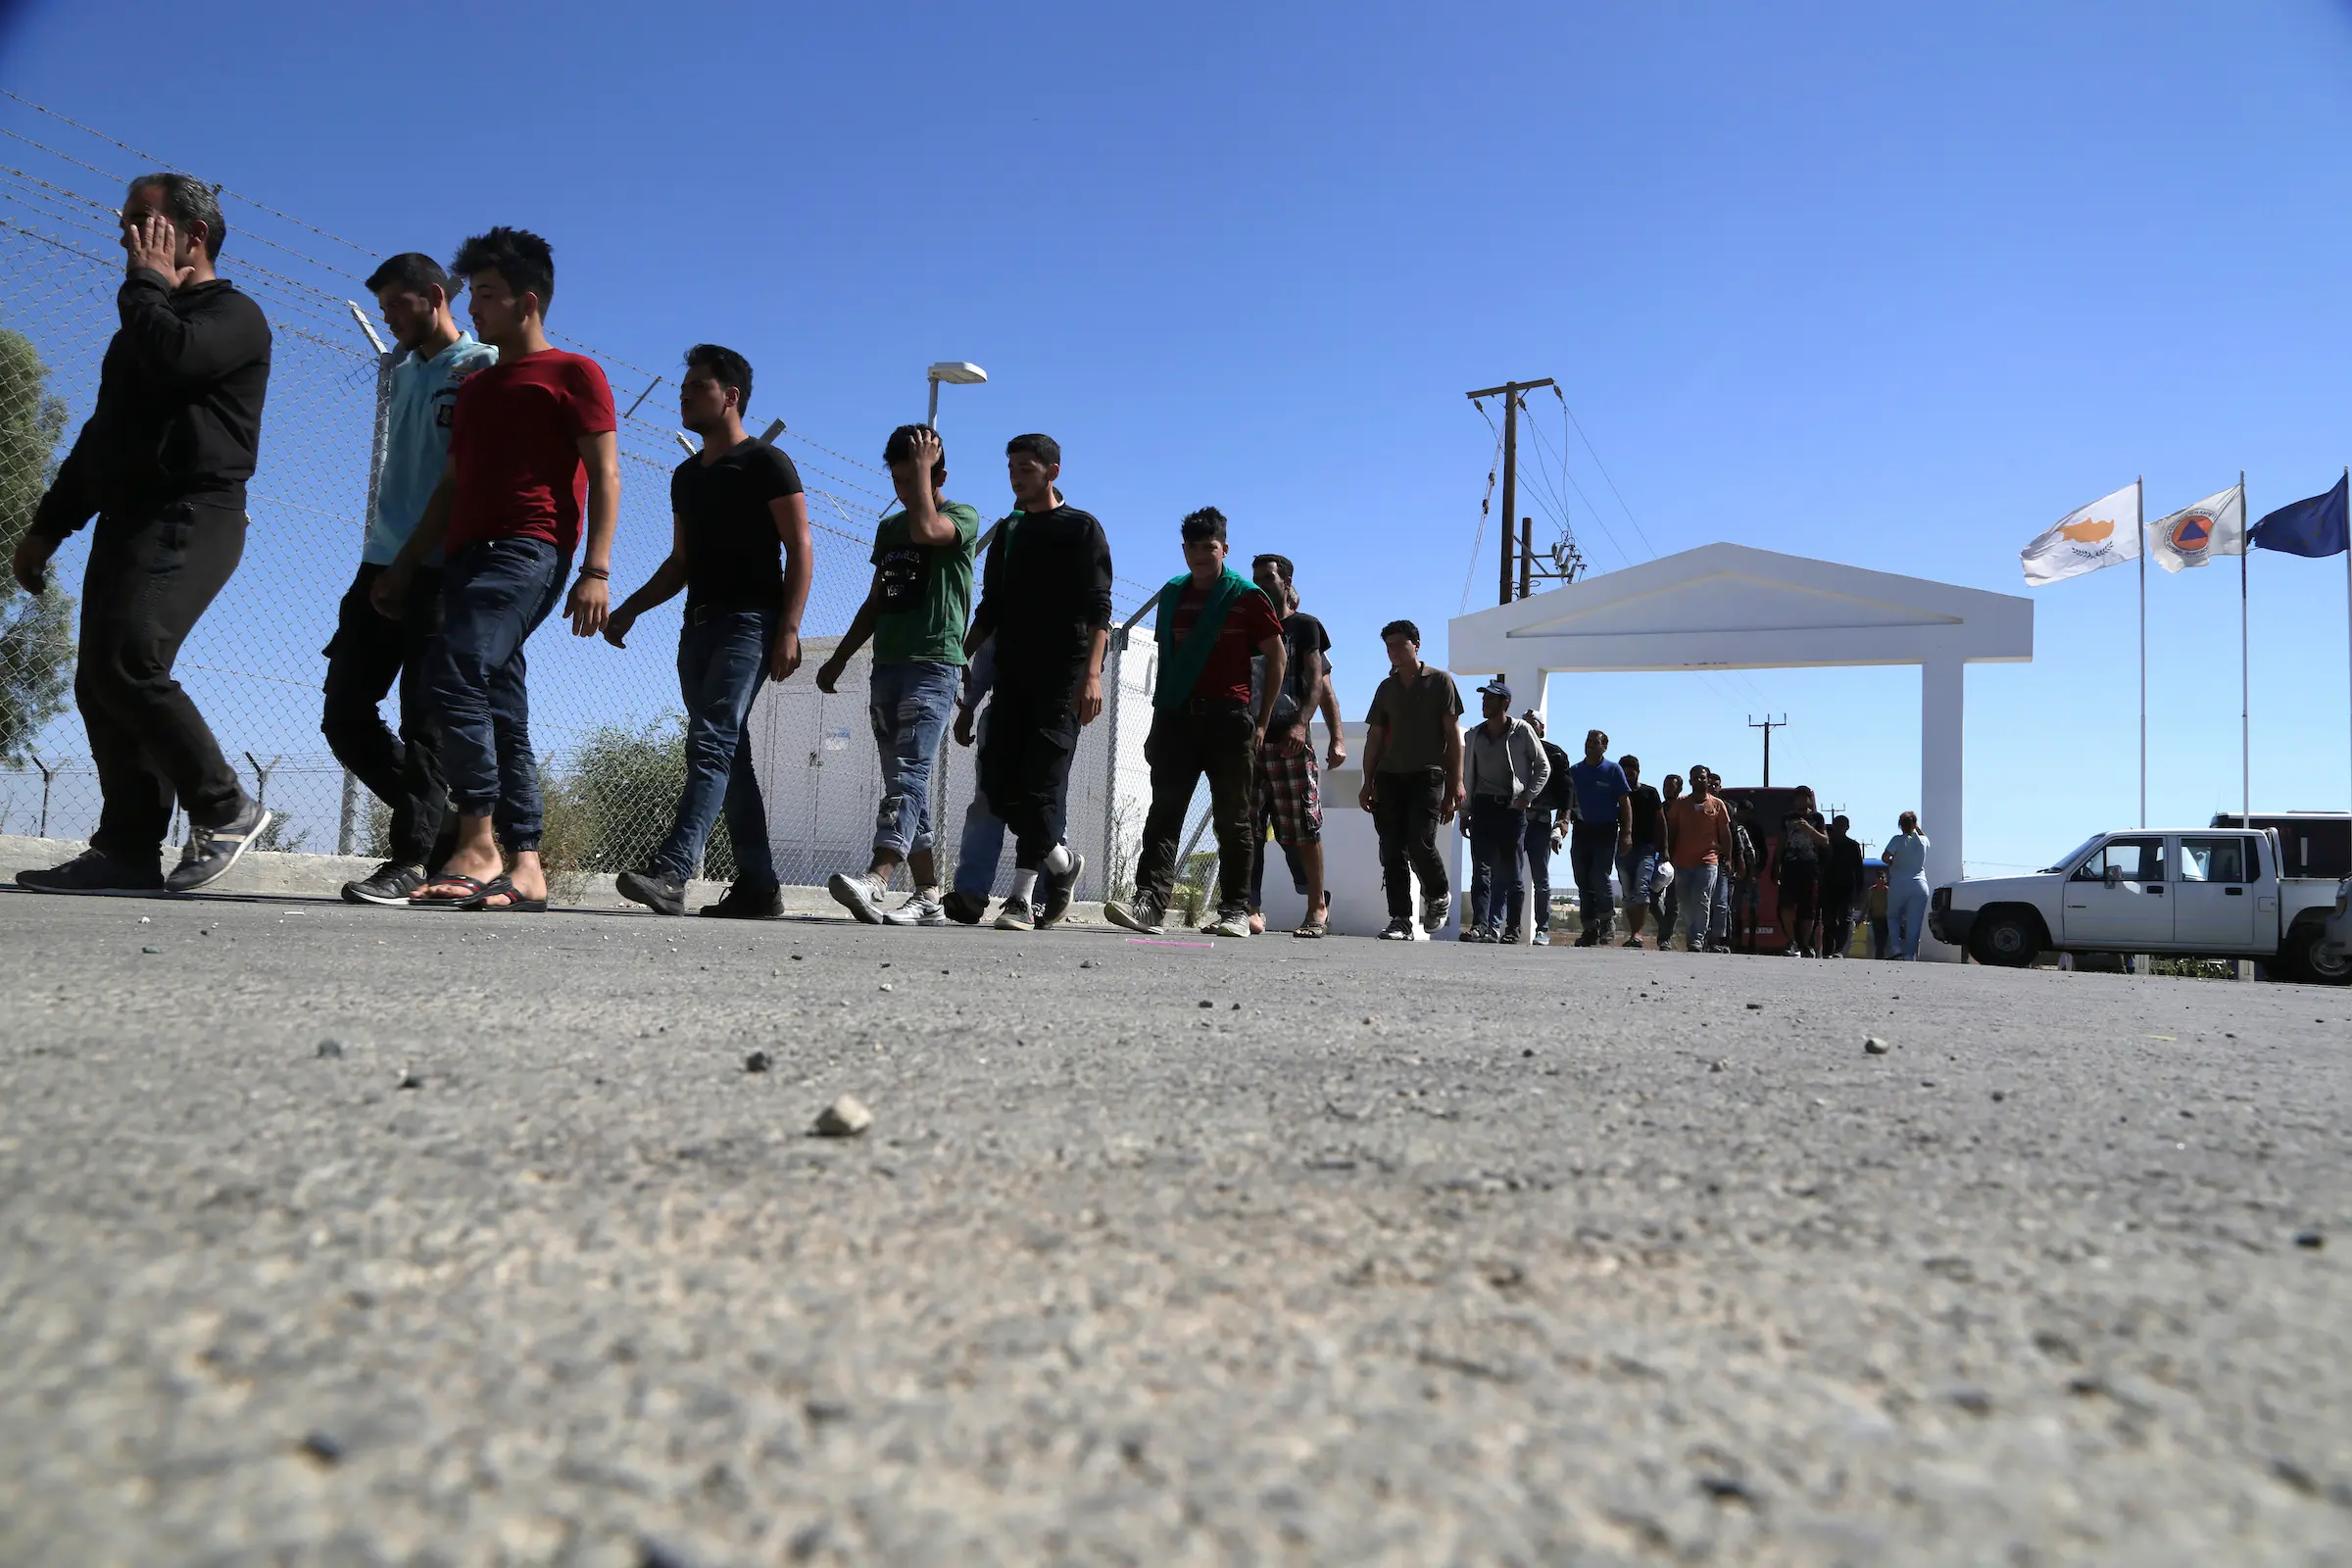 مهاجرون من سوريا يسيرون نحو مخيم للاجئين في كوكينوتريميتيا، خارج العاصمة نيقوسيا في جزيرة قبرص الكائنة شرق البحر المتوسط